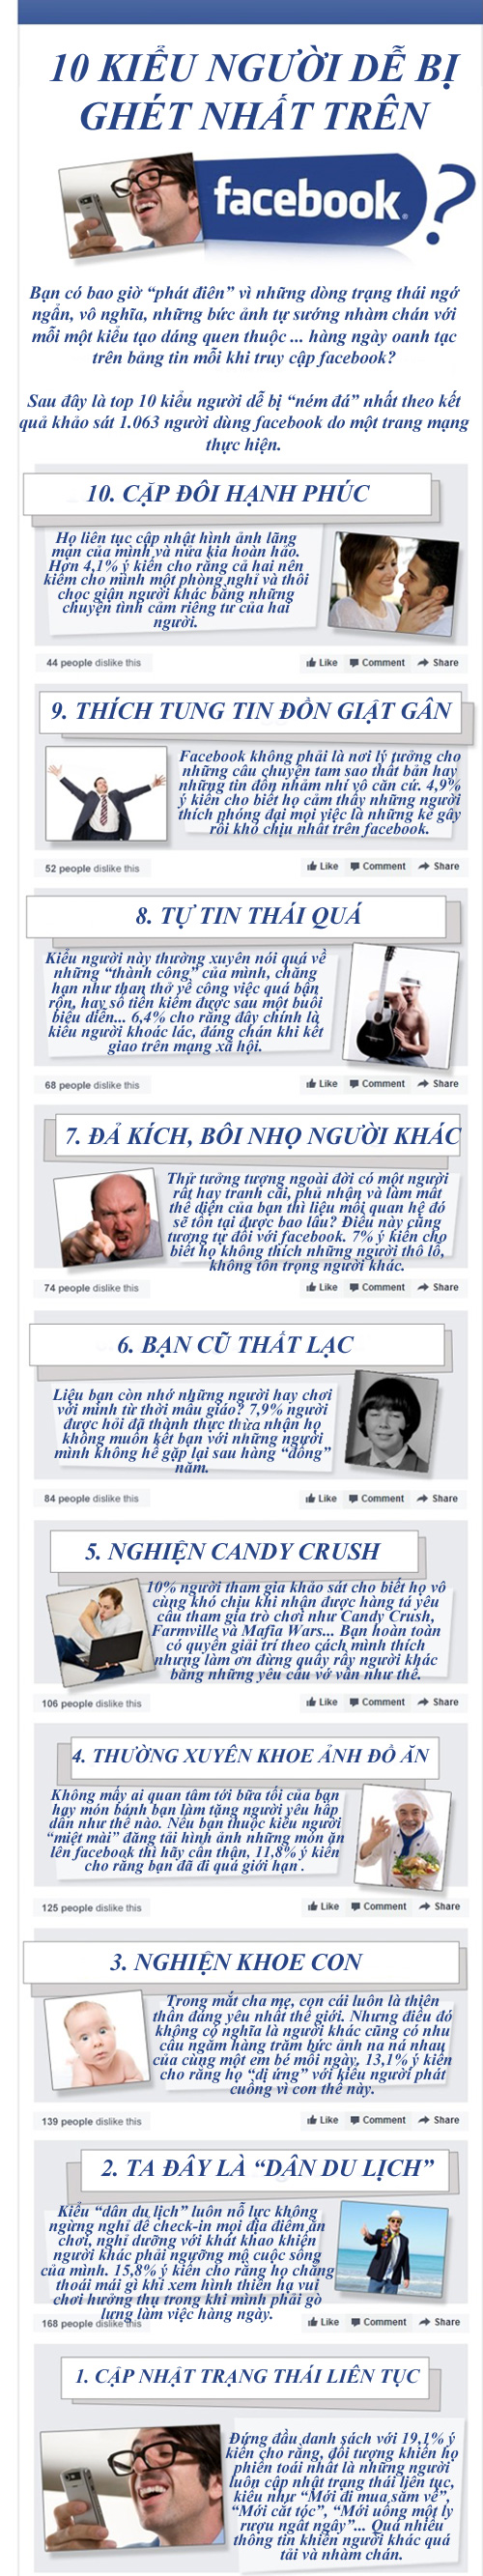 10 kiểu người dùng dễ bị ghét trên Facebook